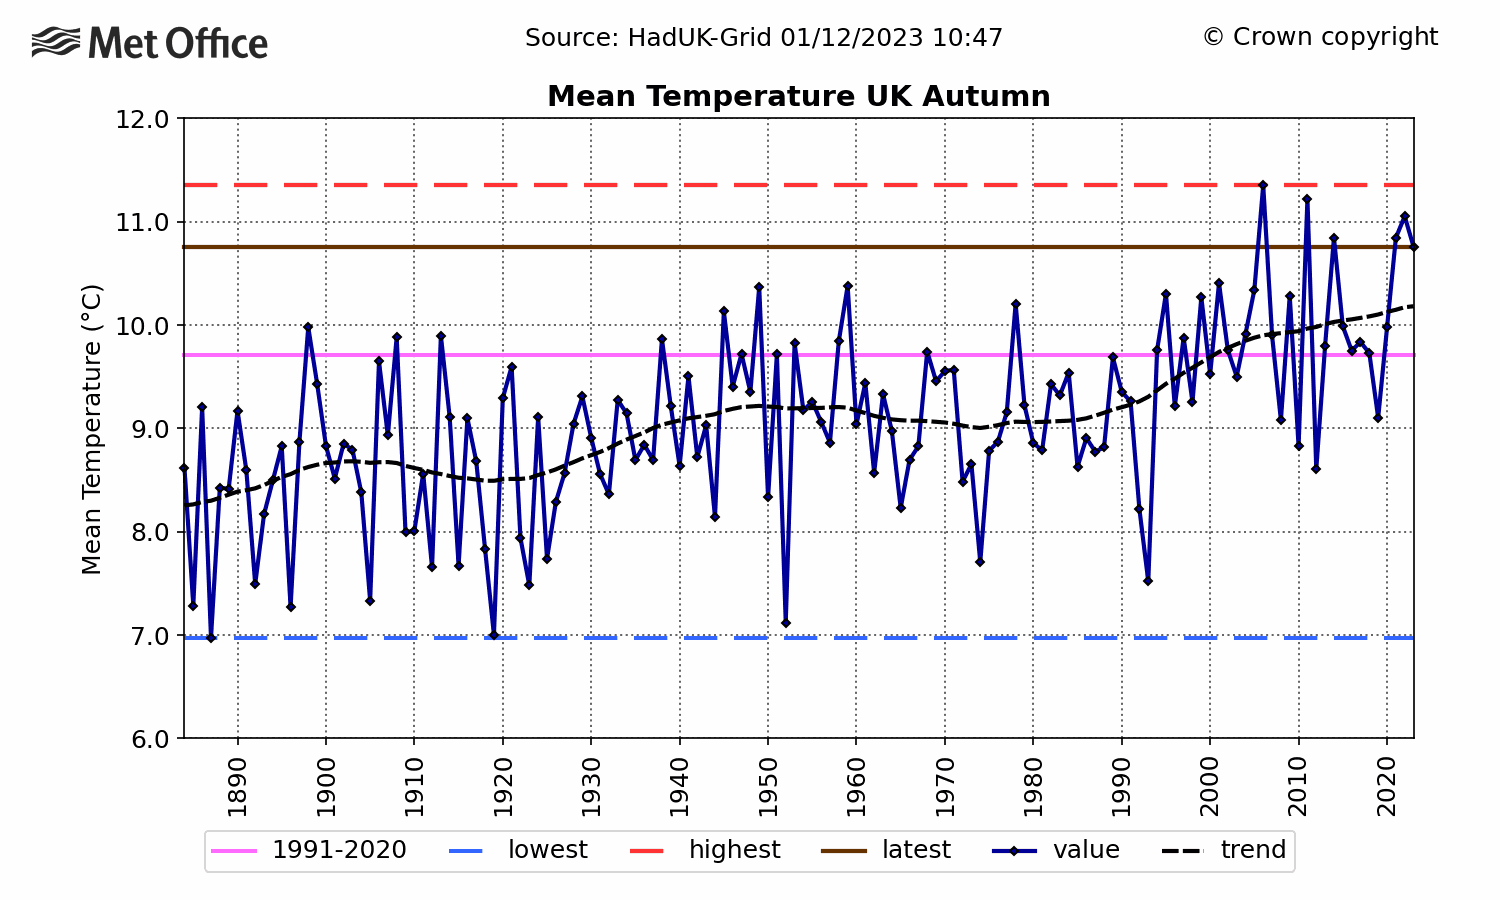 UK Mean temperature - Autumn